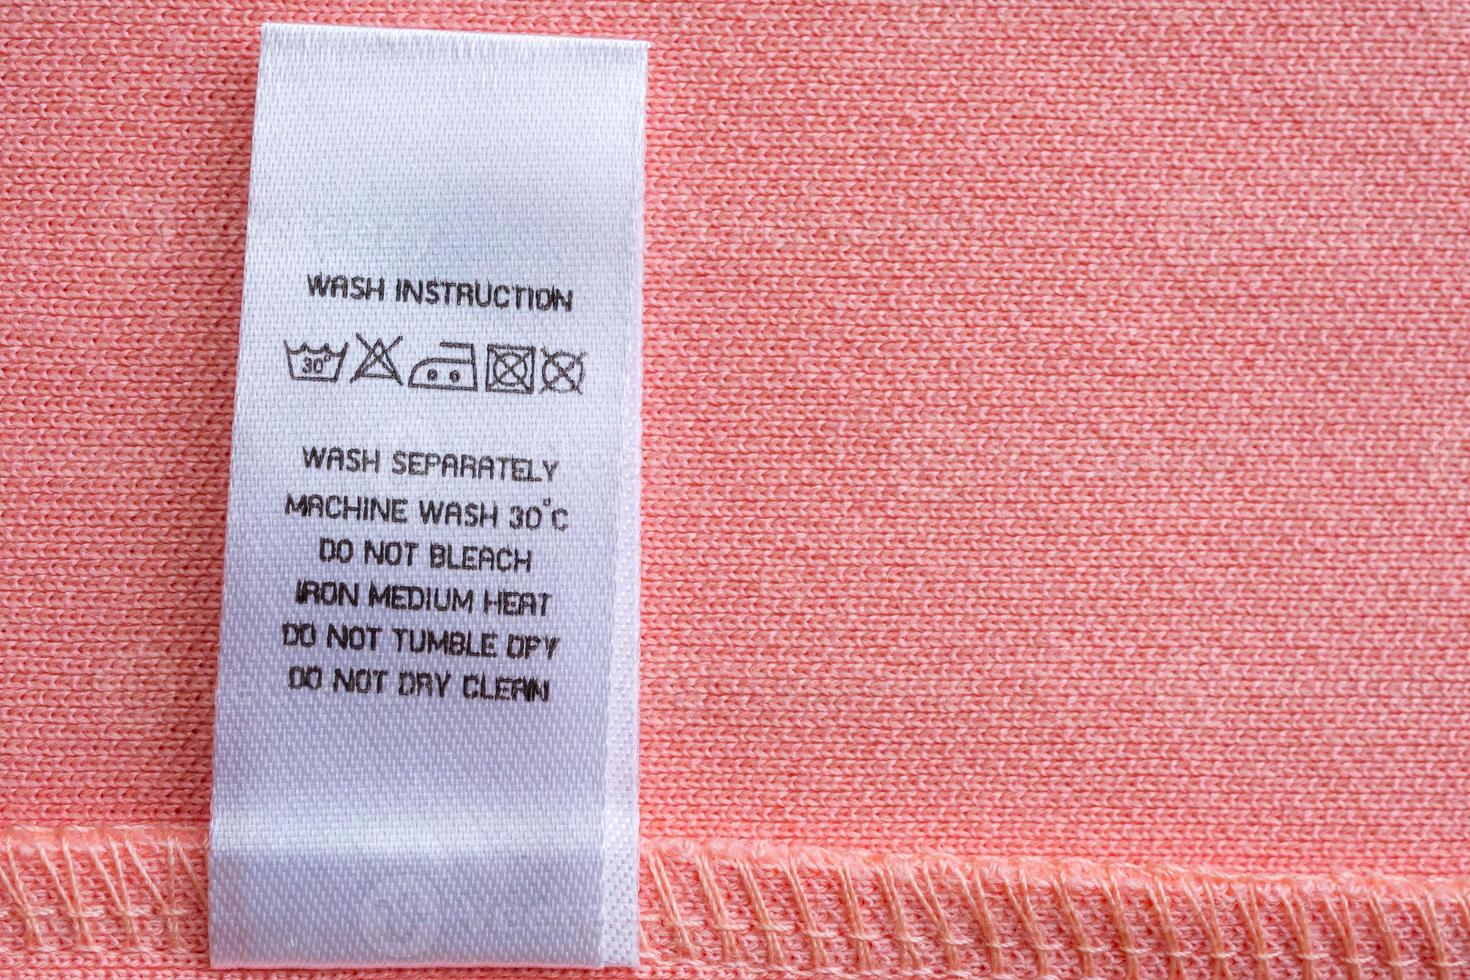 bianca lavanderia cura lavaggio Istruzioni Abiti etichetta su rosa cotone camicia foto